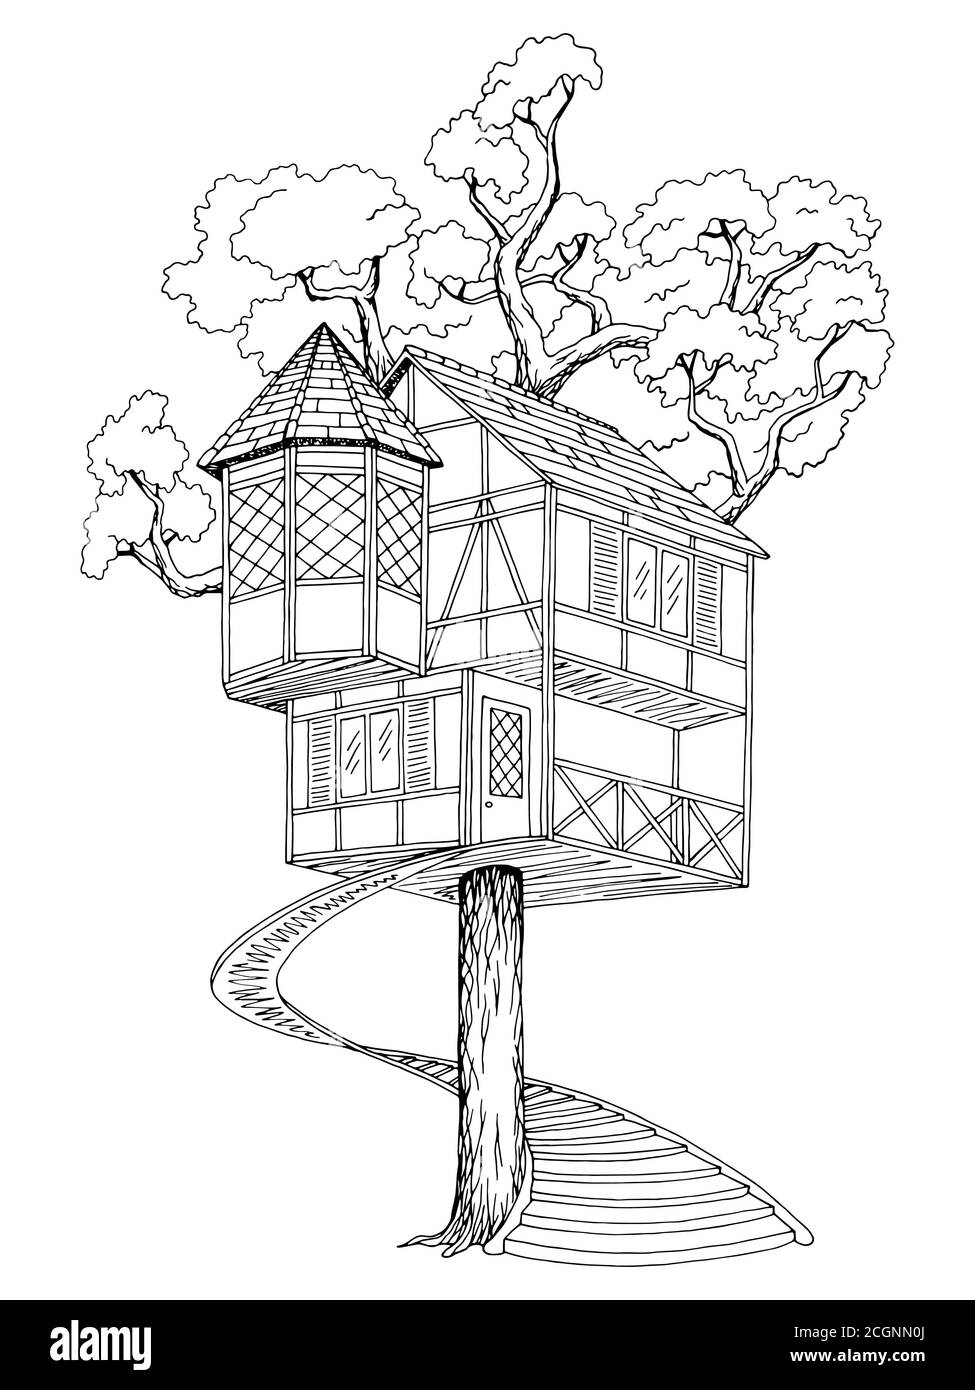 simple house sketch by KingDavid357 on DeviantArt